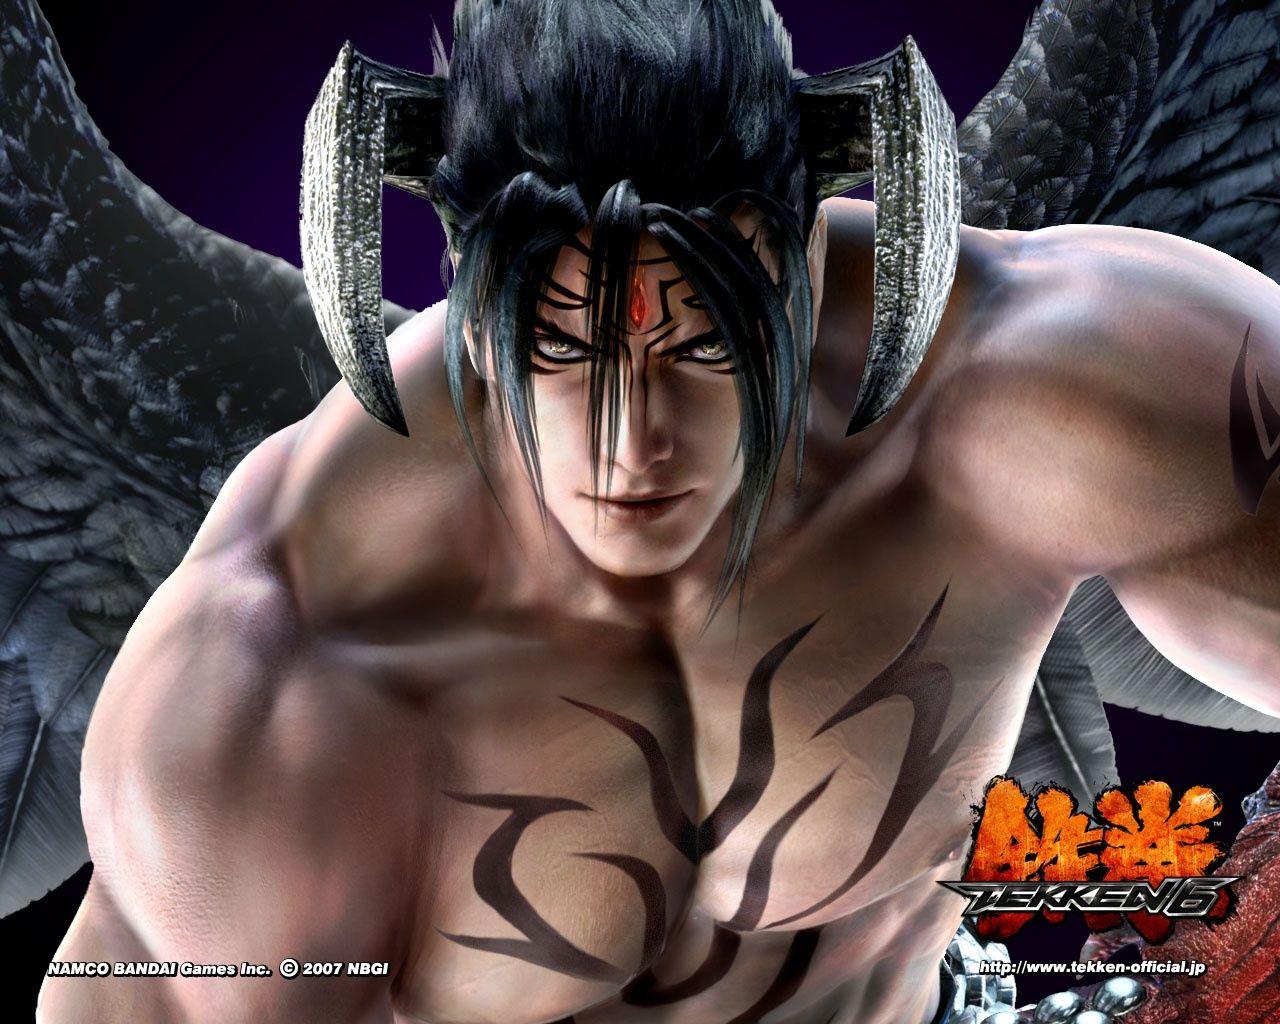 Devil Jin Tekken 6 Wallpaper in jpg format for free download